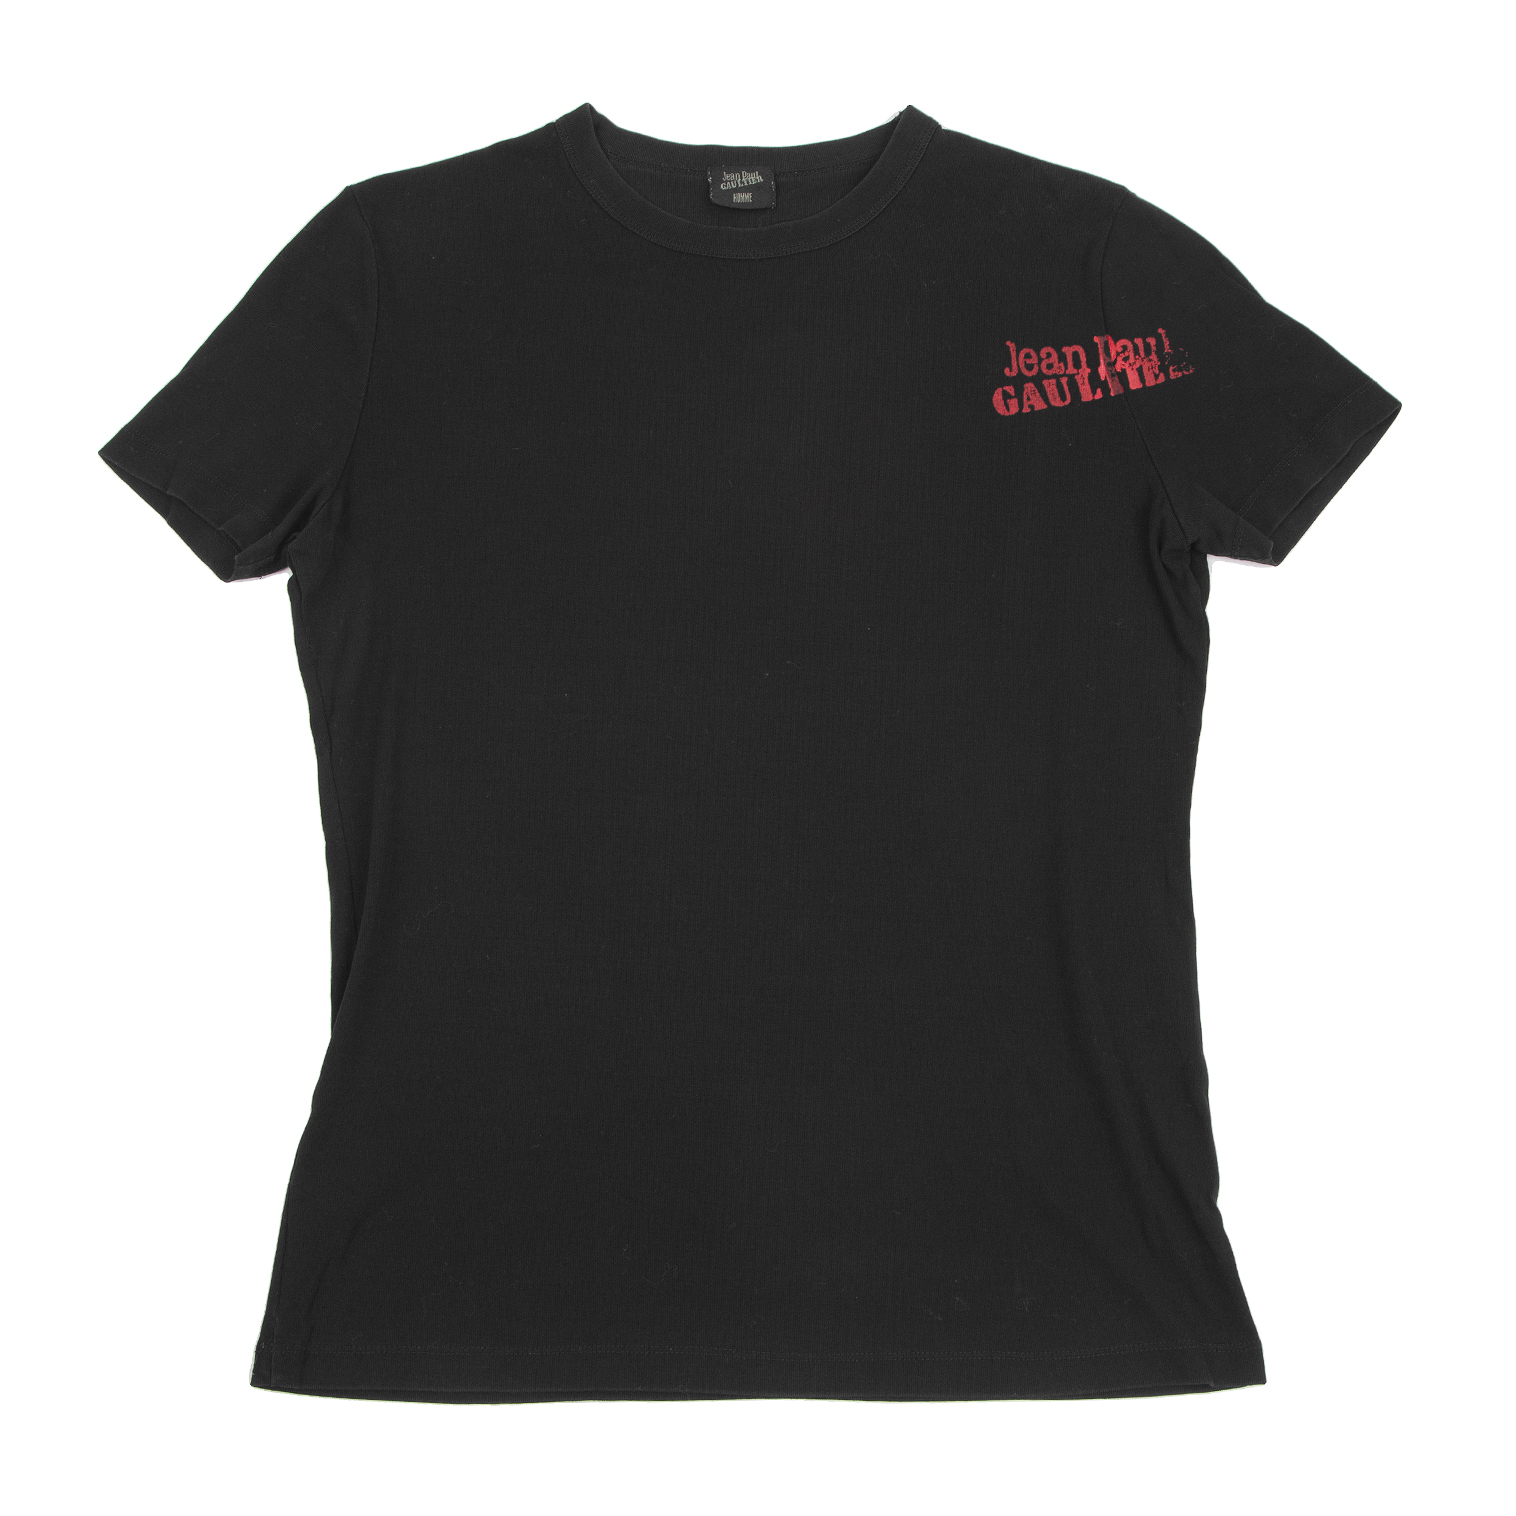 Jean Paul Gaultier Homme Tシャツ(GW期間お値下げ中)長袖Tシャツ